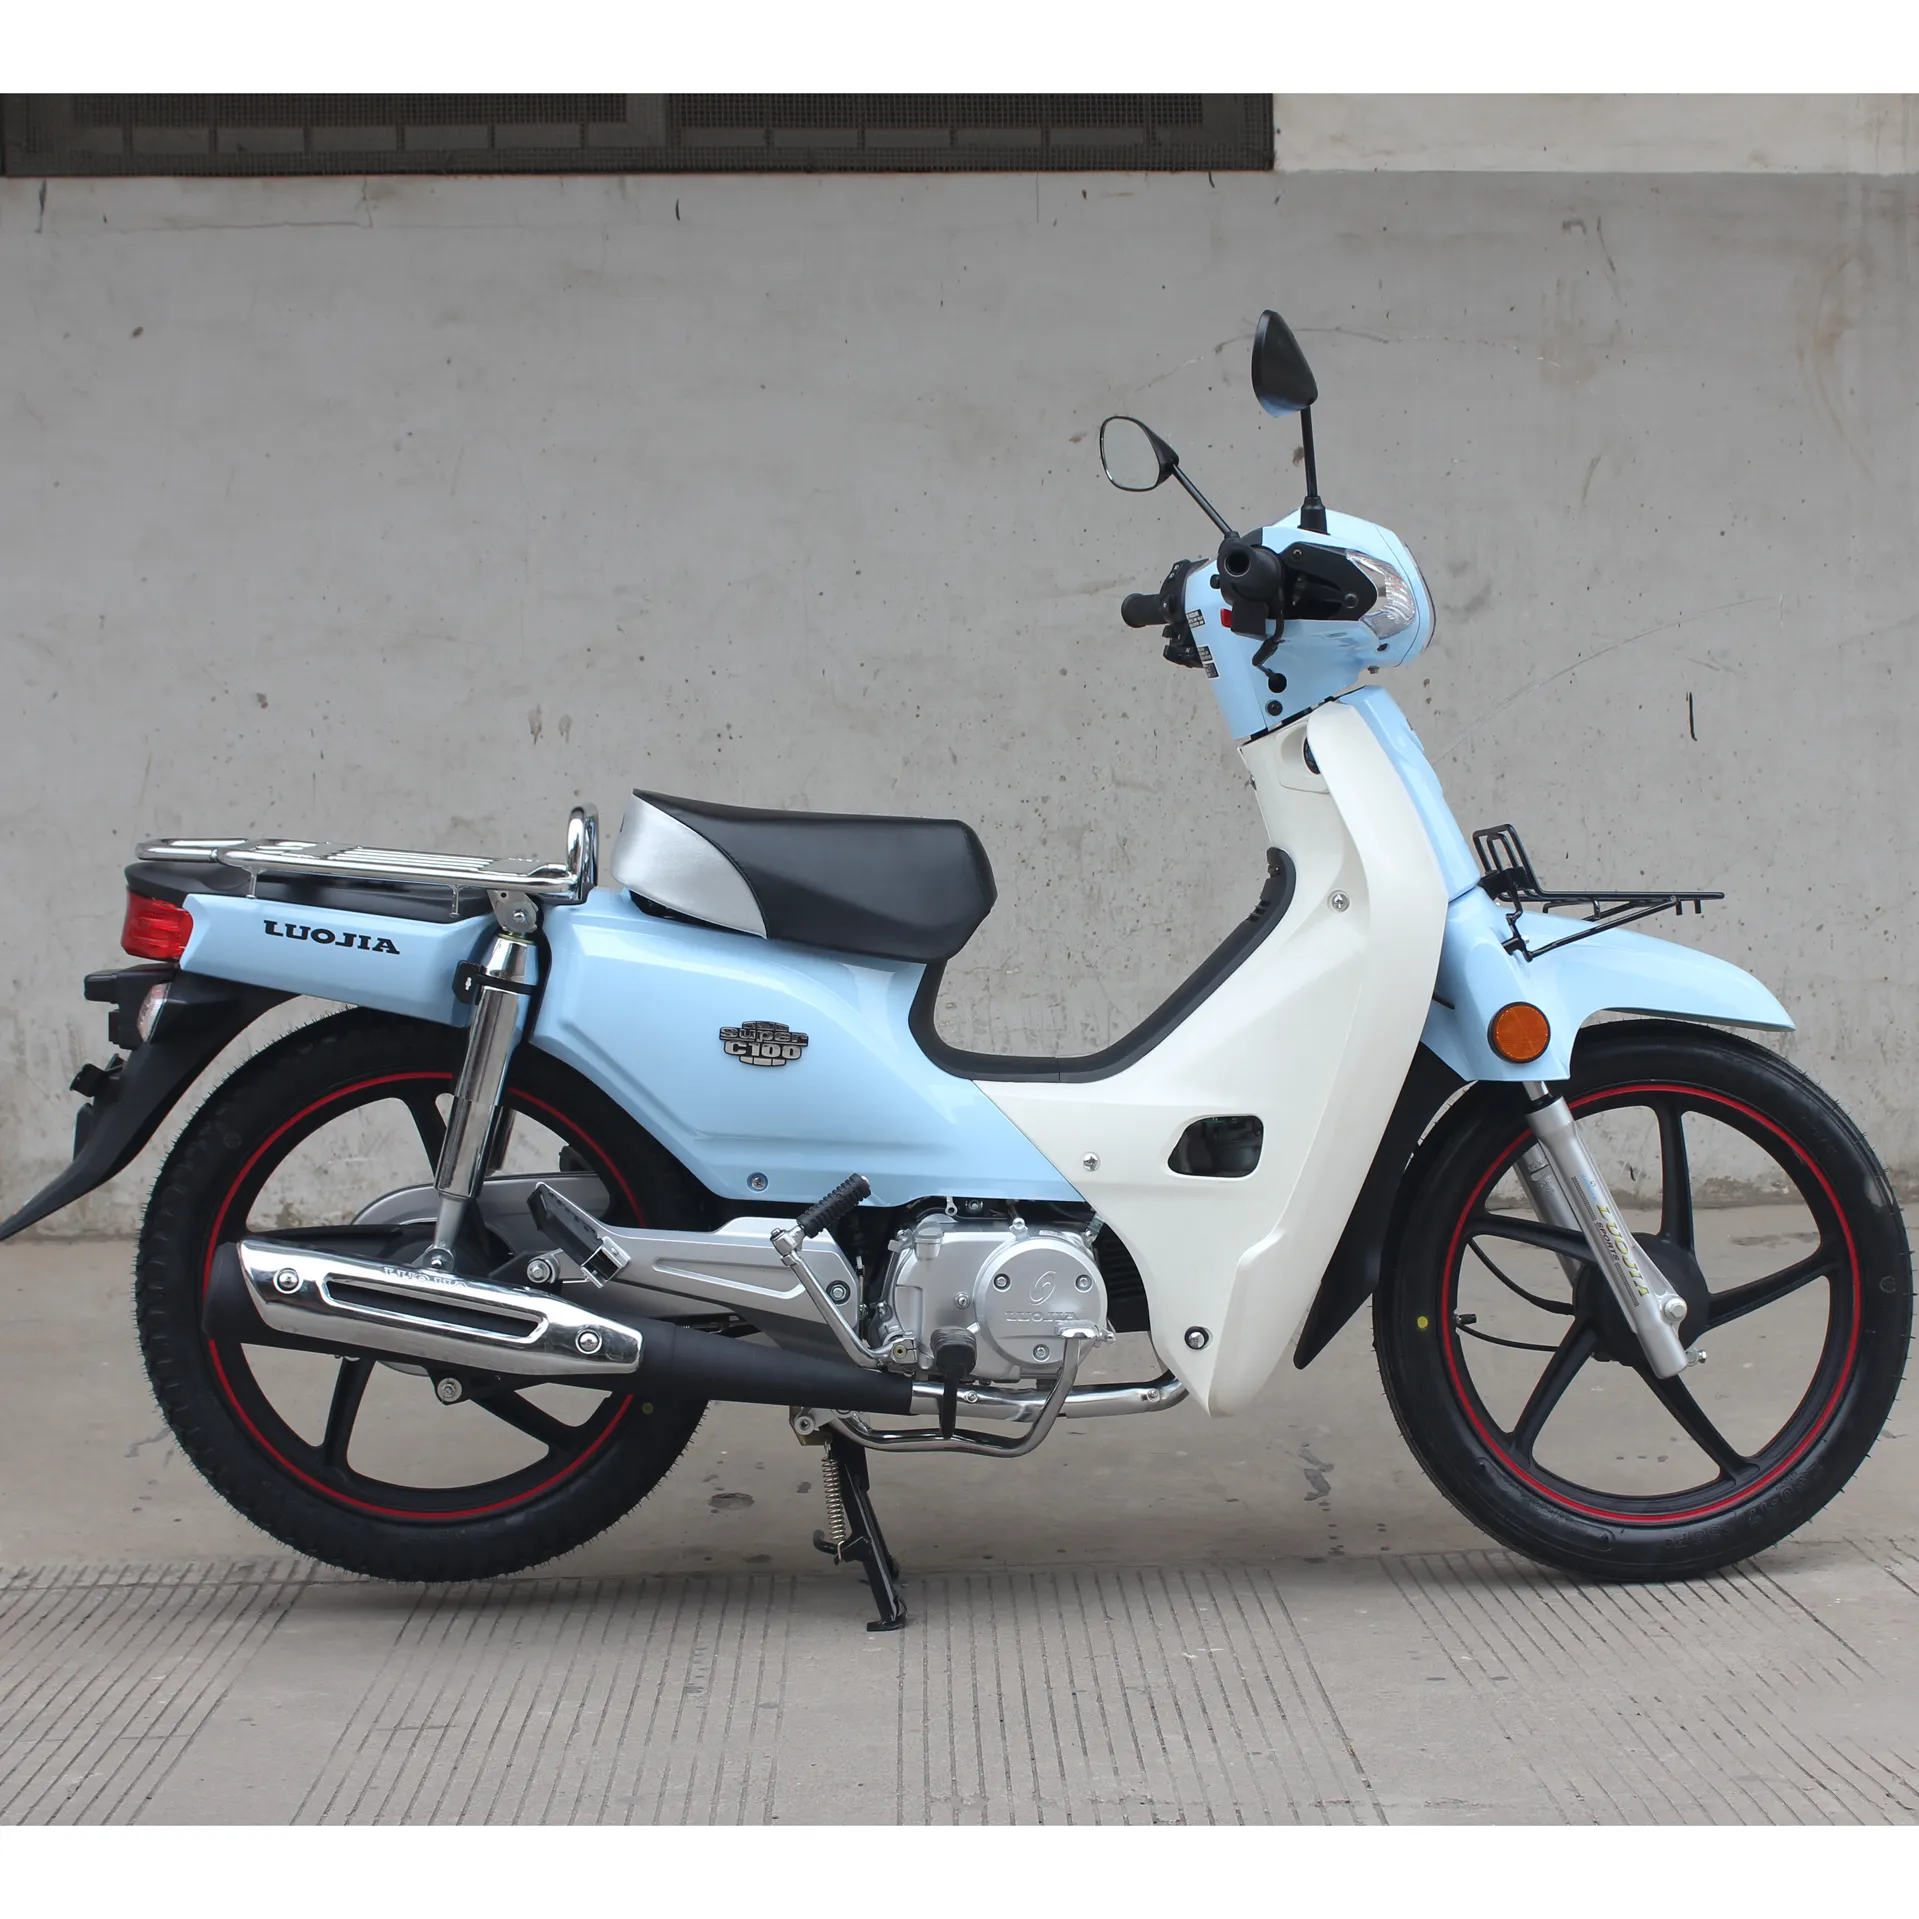 110cc دراجة نارية 50cc دراجة نارية LJ110-21 دراجة نارية بكوب جنوب شرق آسيا السوق البنزين جديد 110cc البنزين الصين الصانع